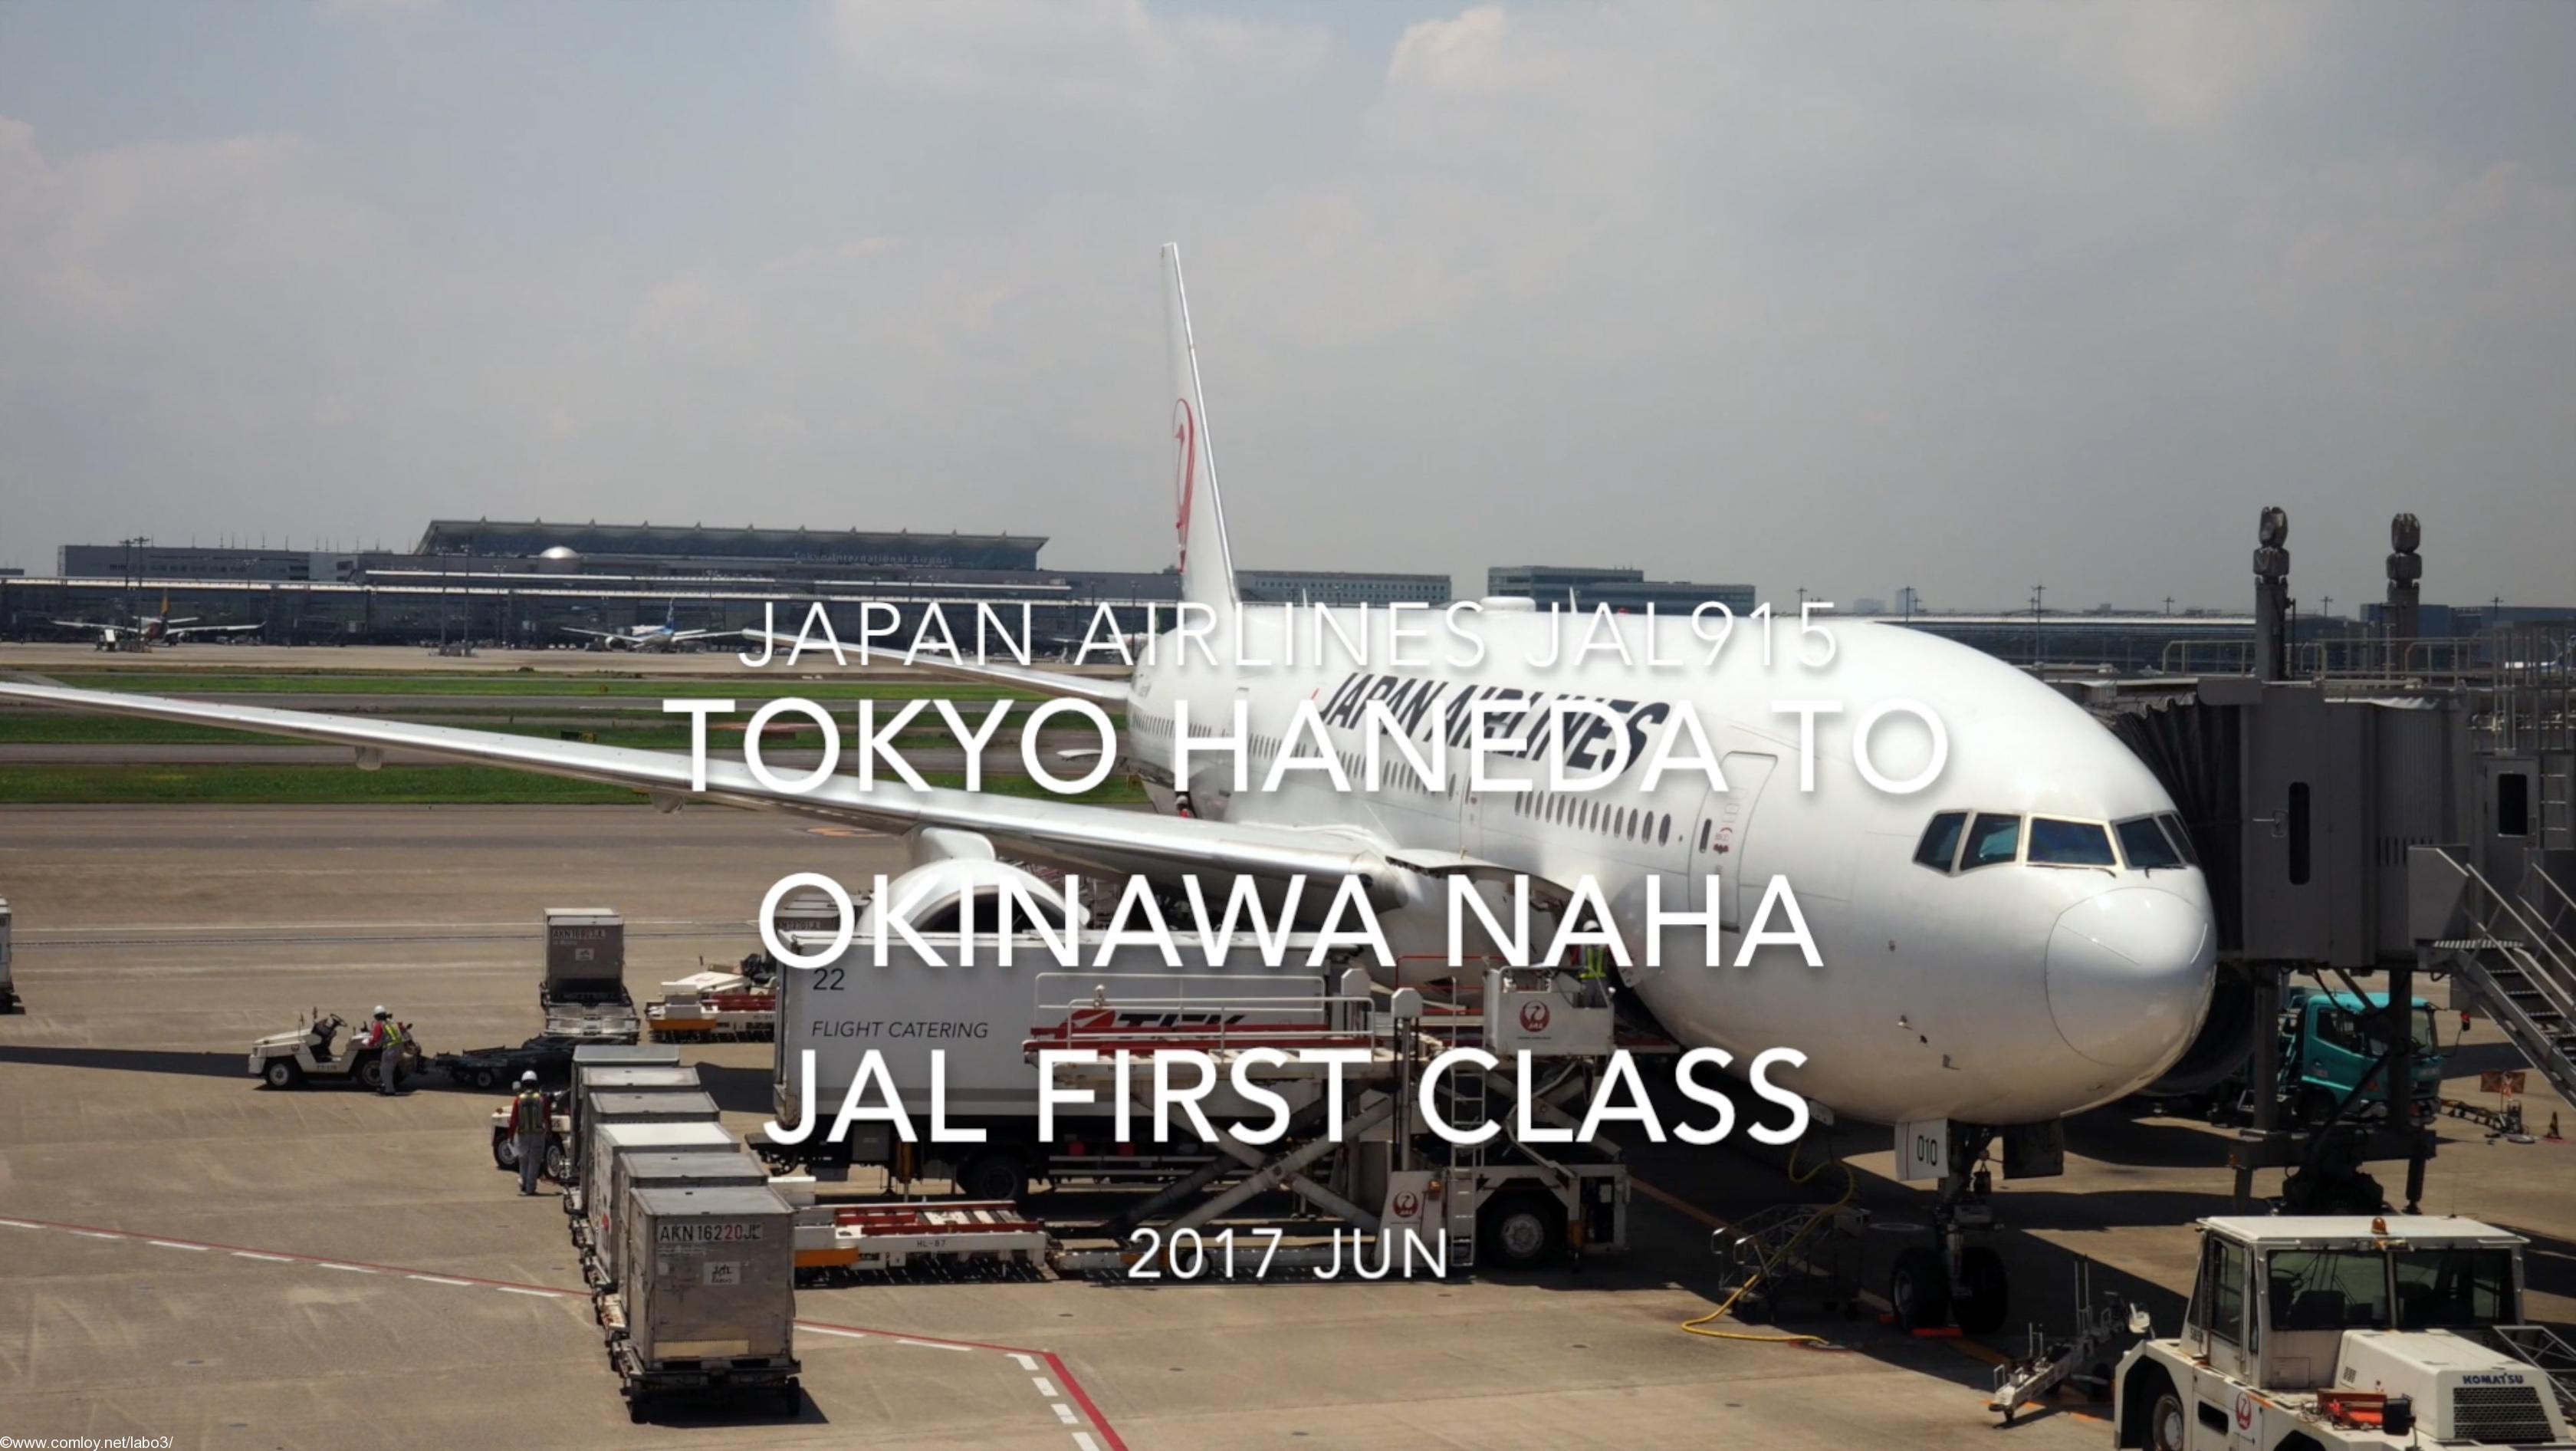 【Flight Report】 JAL915 TOKYO HANEDA to OKINAWA NAHA First Class 2017 JUN 日本航空 羽田 - 那覇 ファーストクラス 搭乗記